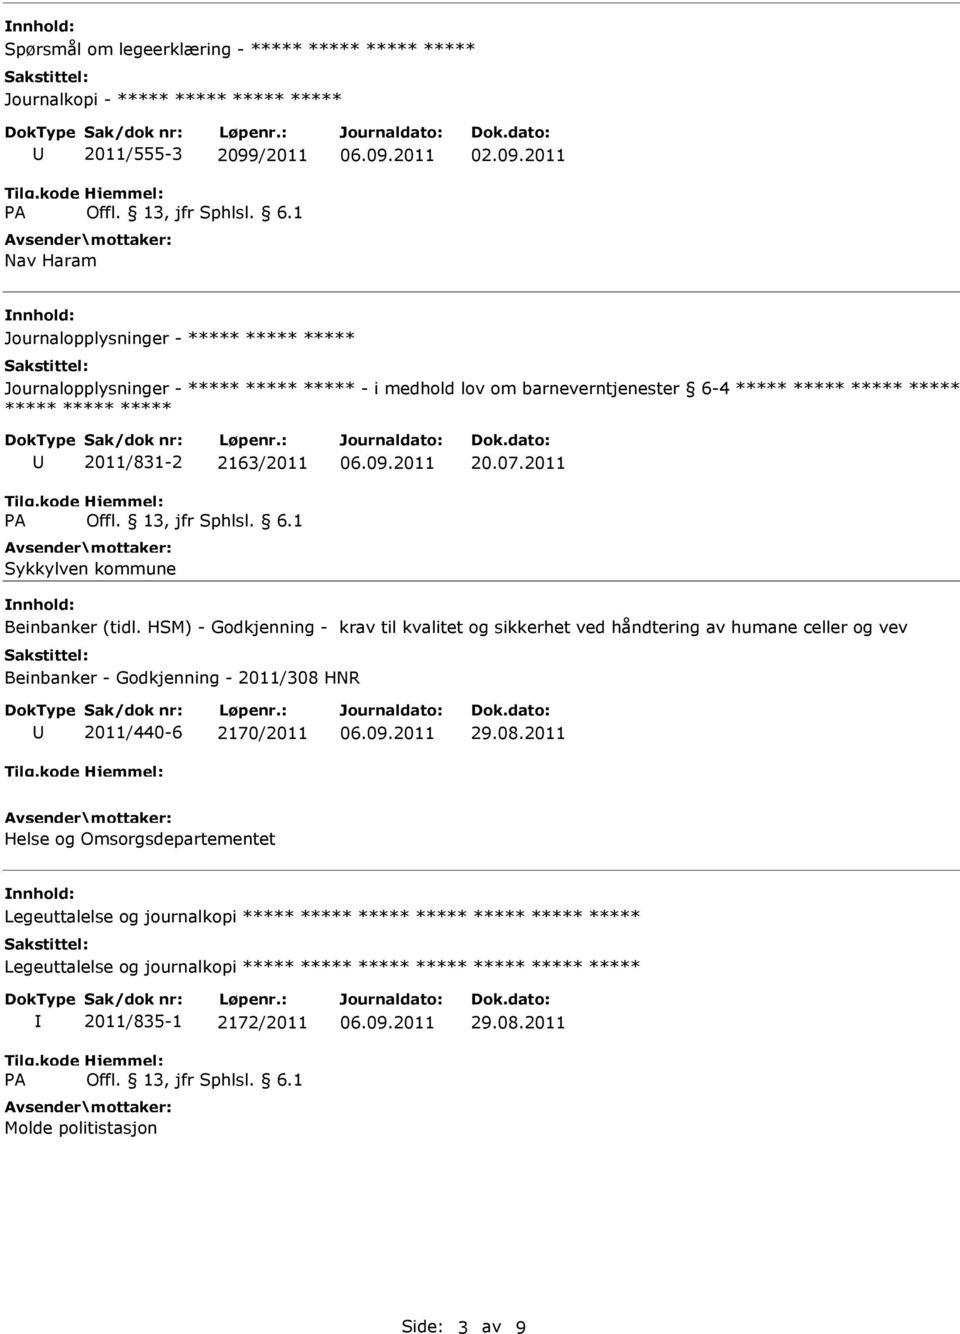 2011 Journalopplysninger - Journalopplysninger - - i medhold lov om barneverntjenester 6-4 2011/831-2 2163/2011 Sykkylven kommune 20.07.